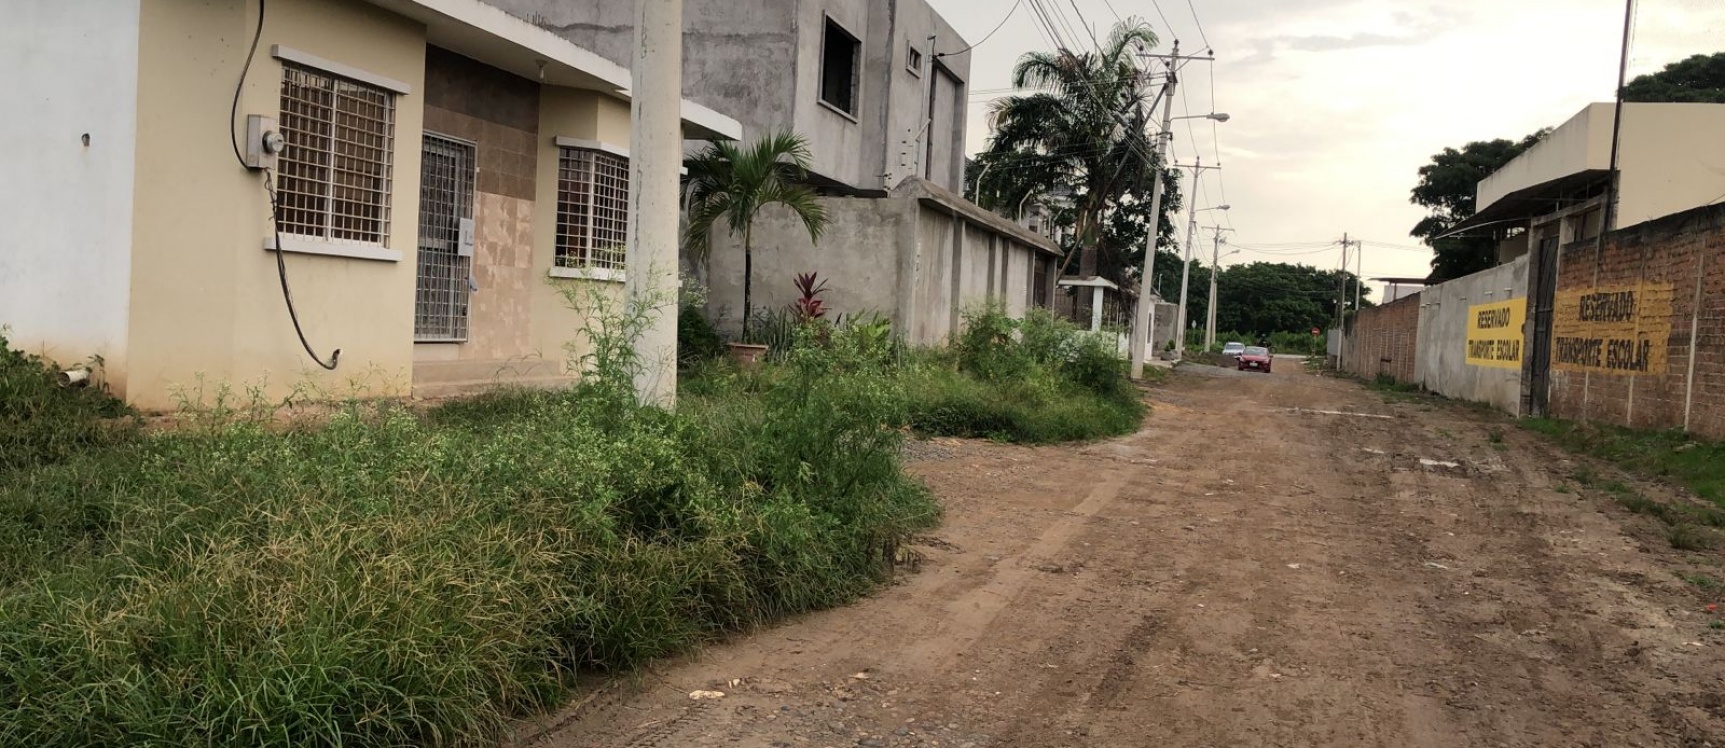 GeoBienes - Terreno en venta ubicado en la ciudad de Machala - Plusvalia Guayaquil Casas de venta y alquiler Inmobiliaria Ecuador